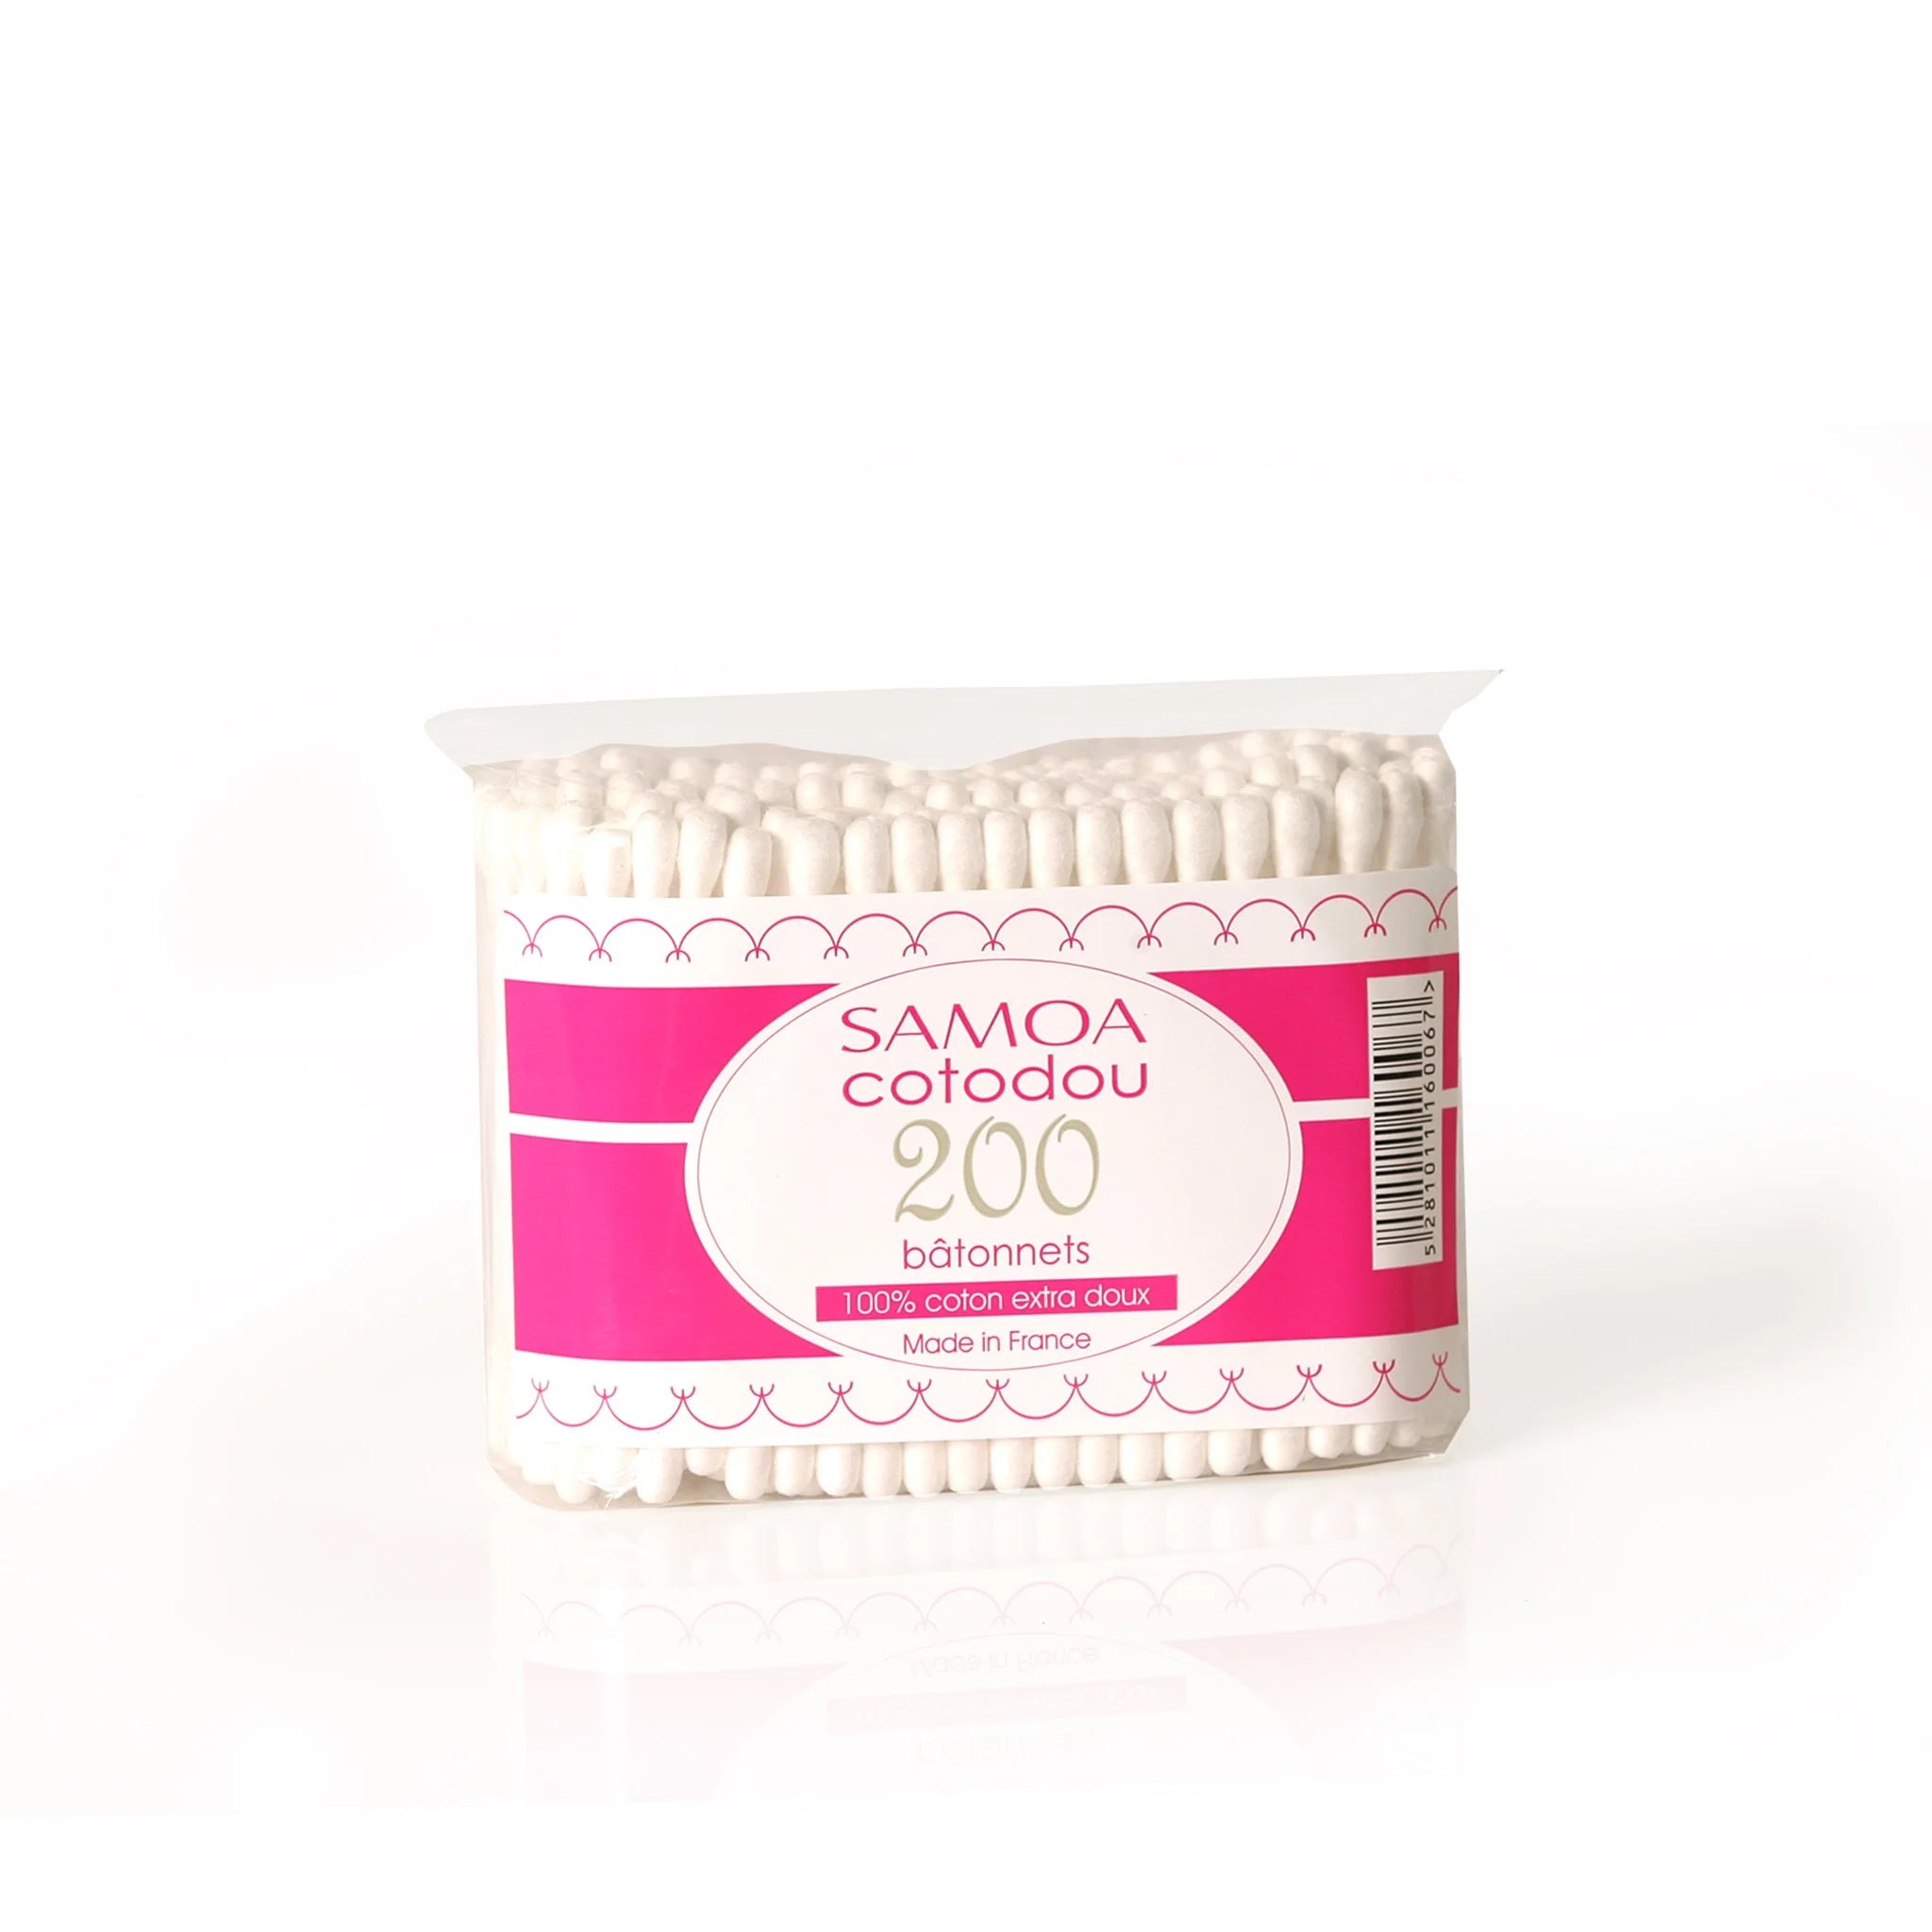 Cotton Buds 200 Pieces - MazenOnline